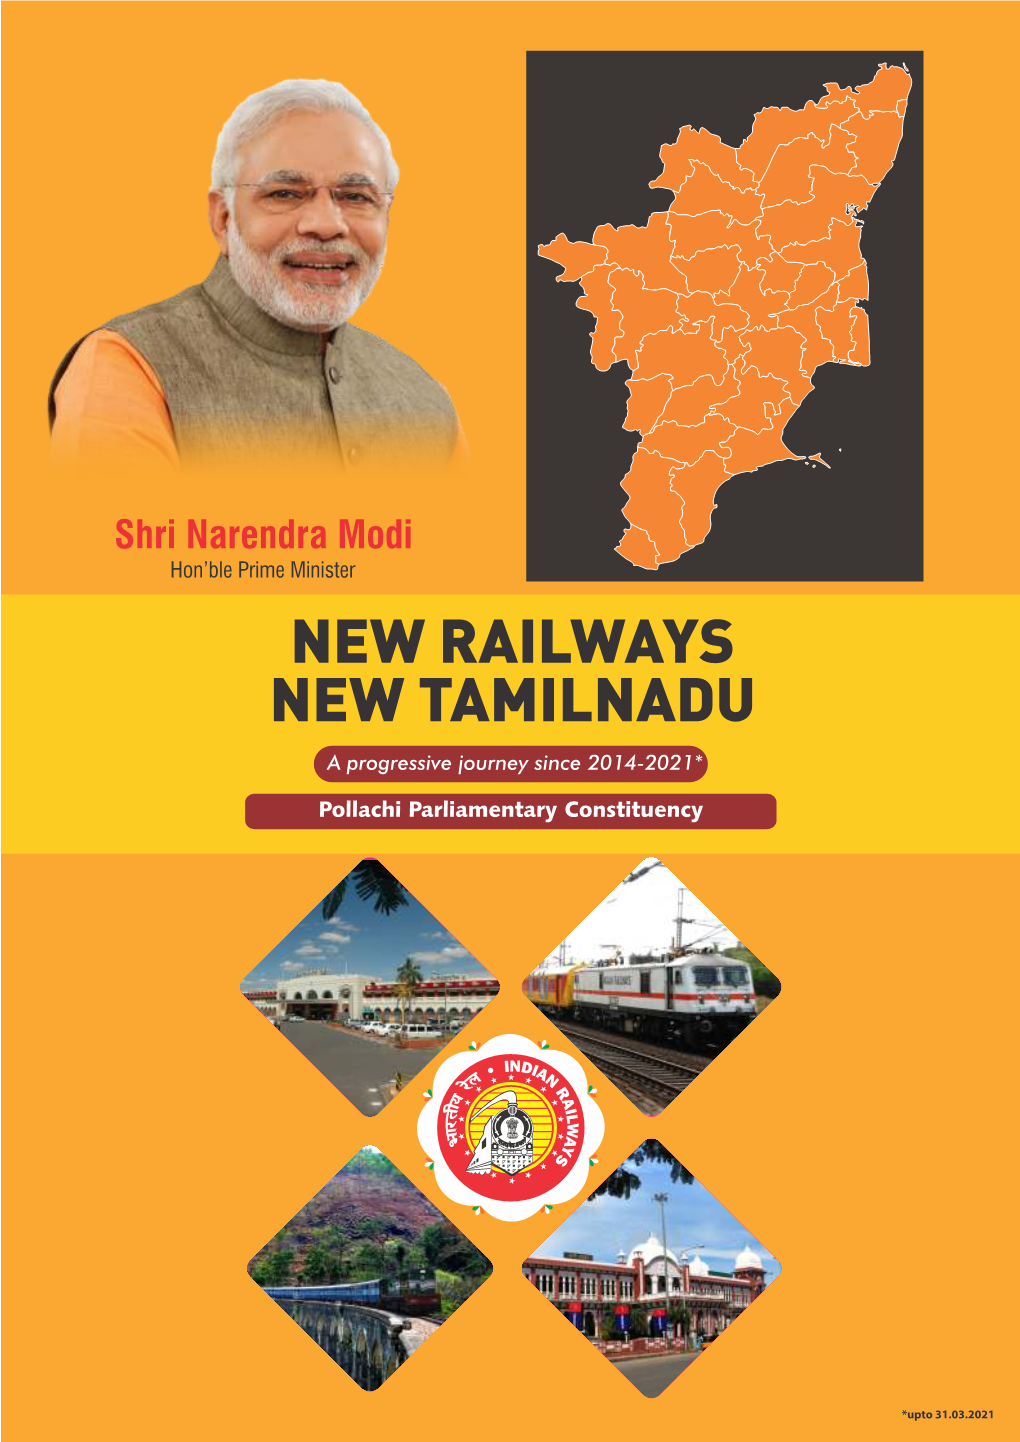 NEW RAILWAYS NEW TAMILNADU a Progressive Journey Since 2014-2021* Pollachi Parliamentary Constituency